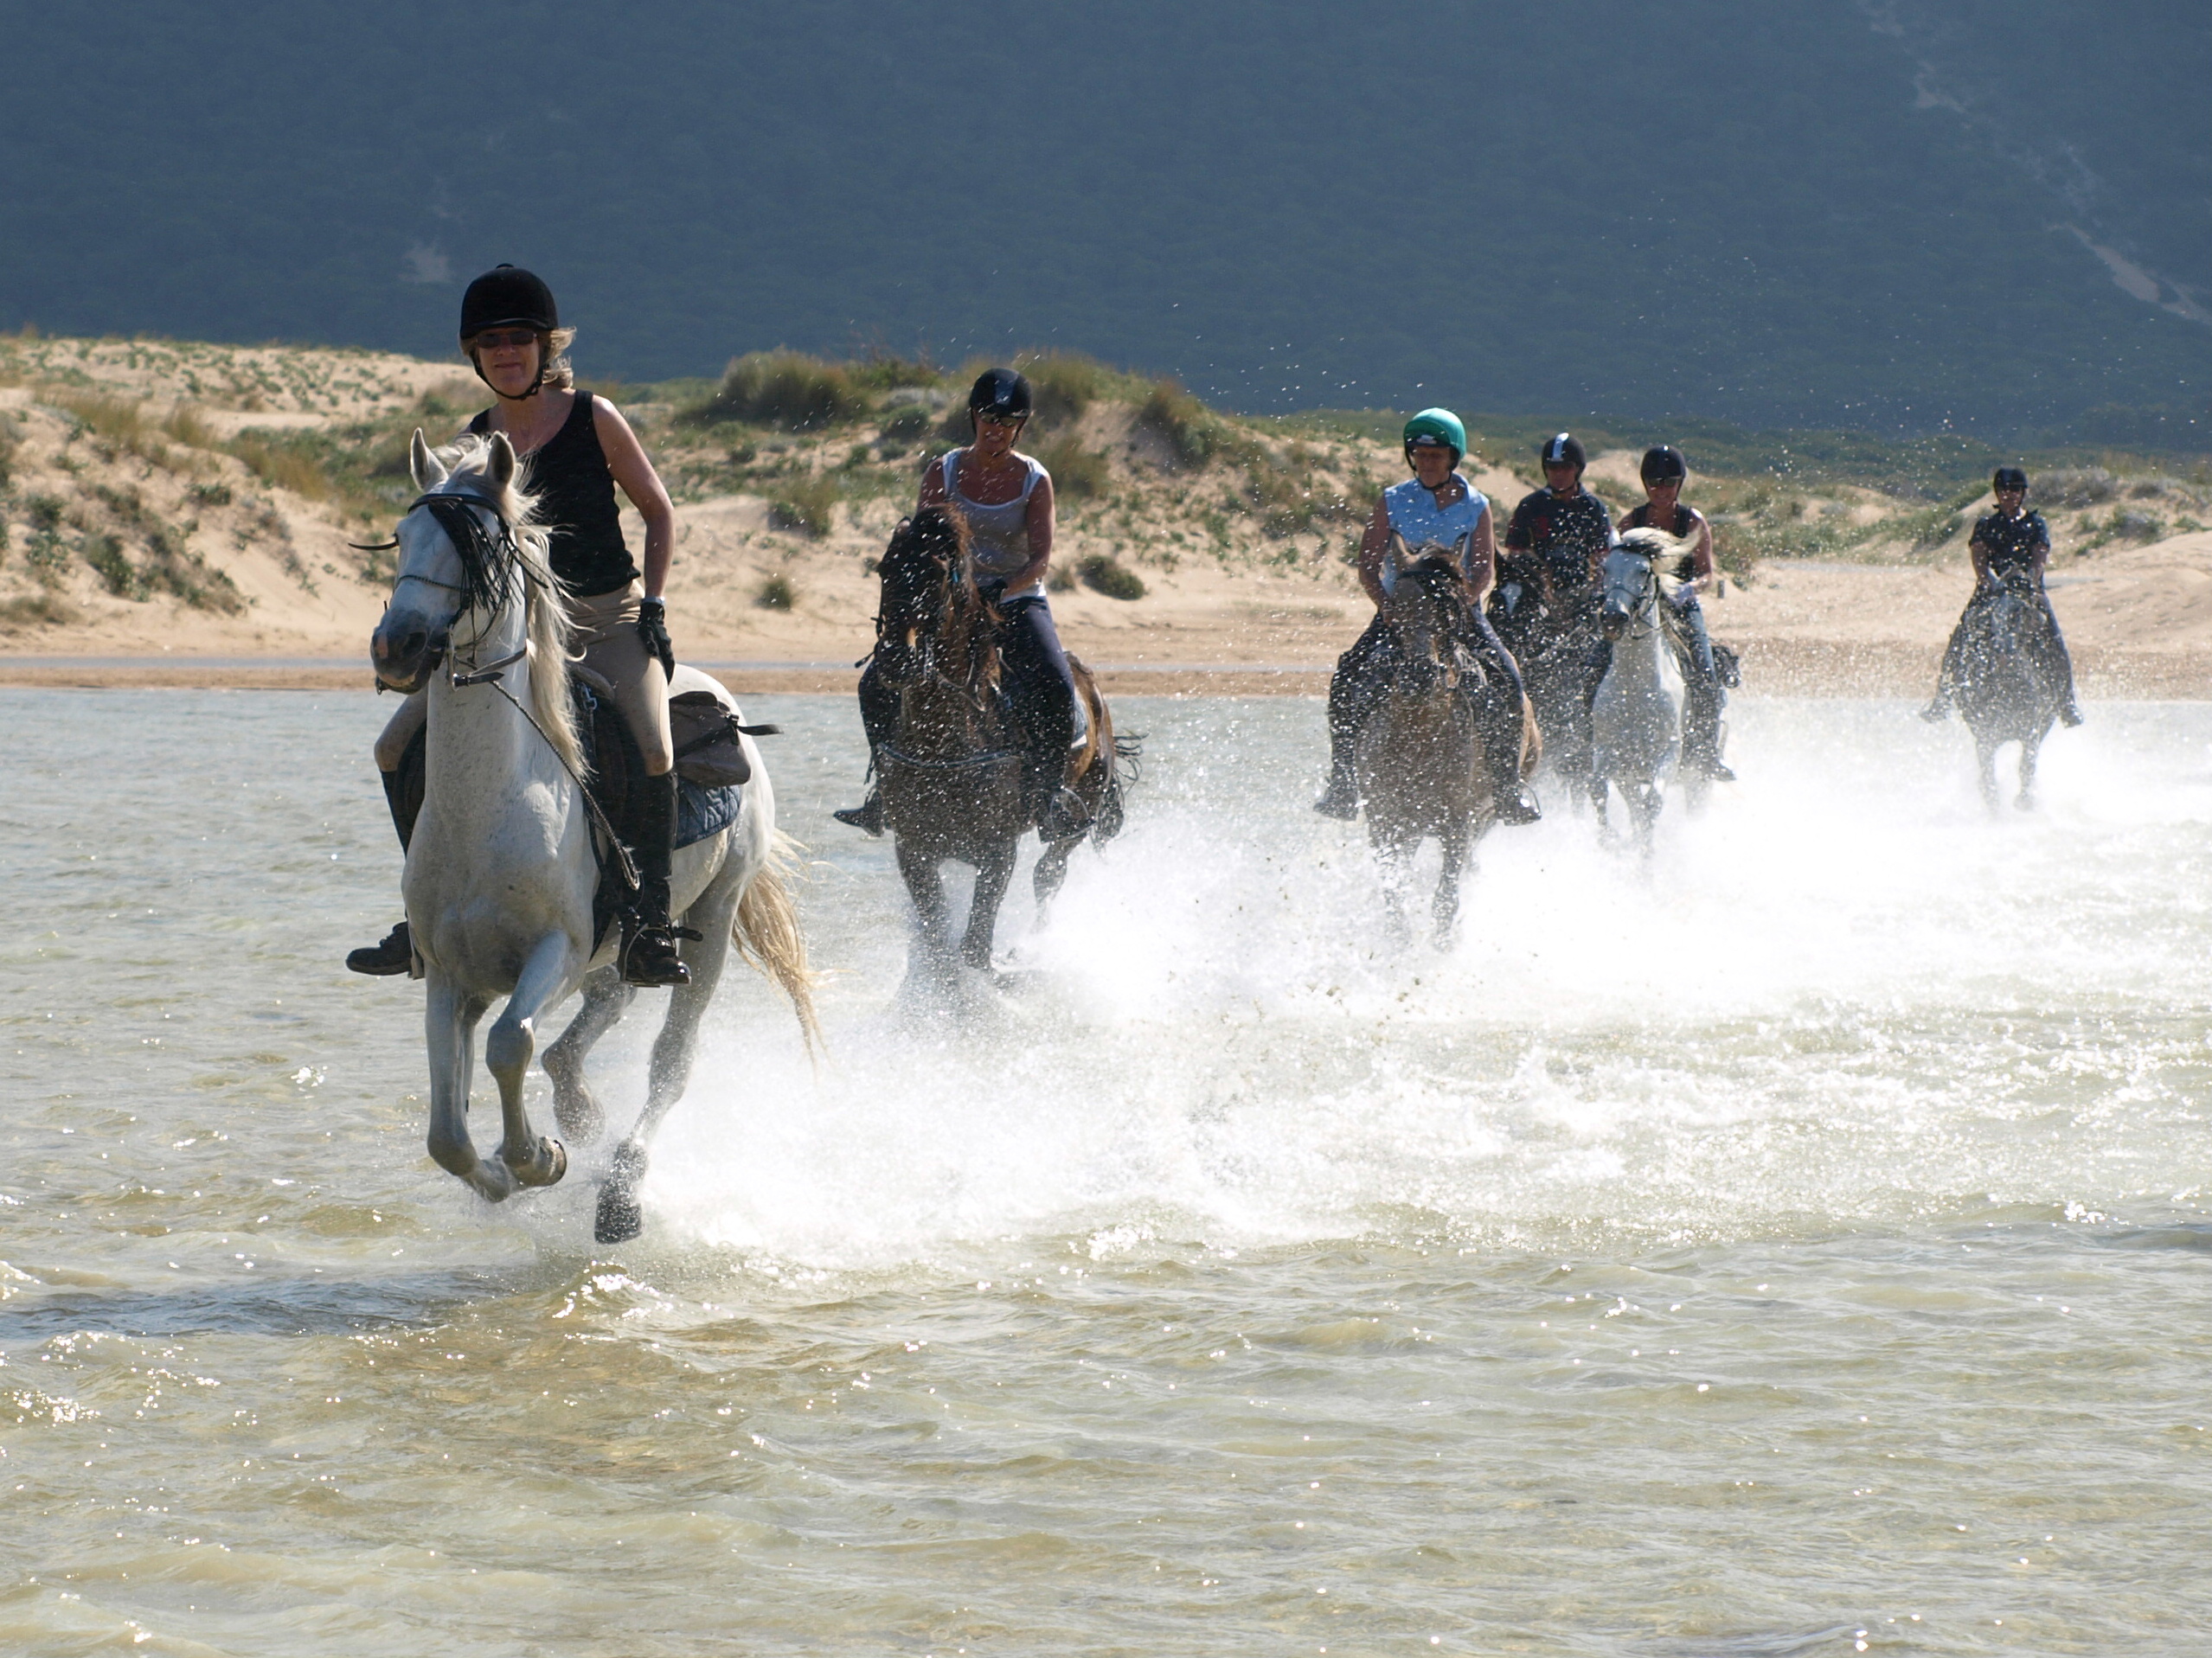 Paardrijden op het strand in Zuid Spanje - Vakantie te paard / Reisbureau Perlan